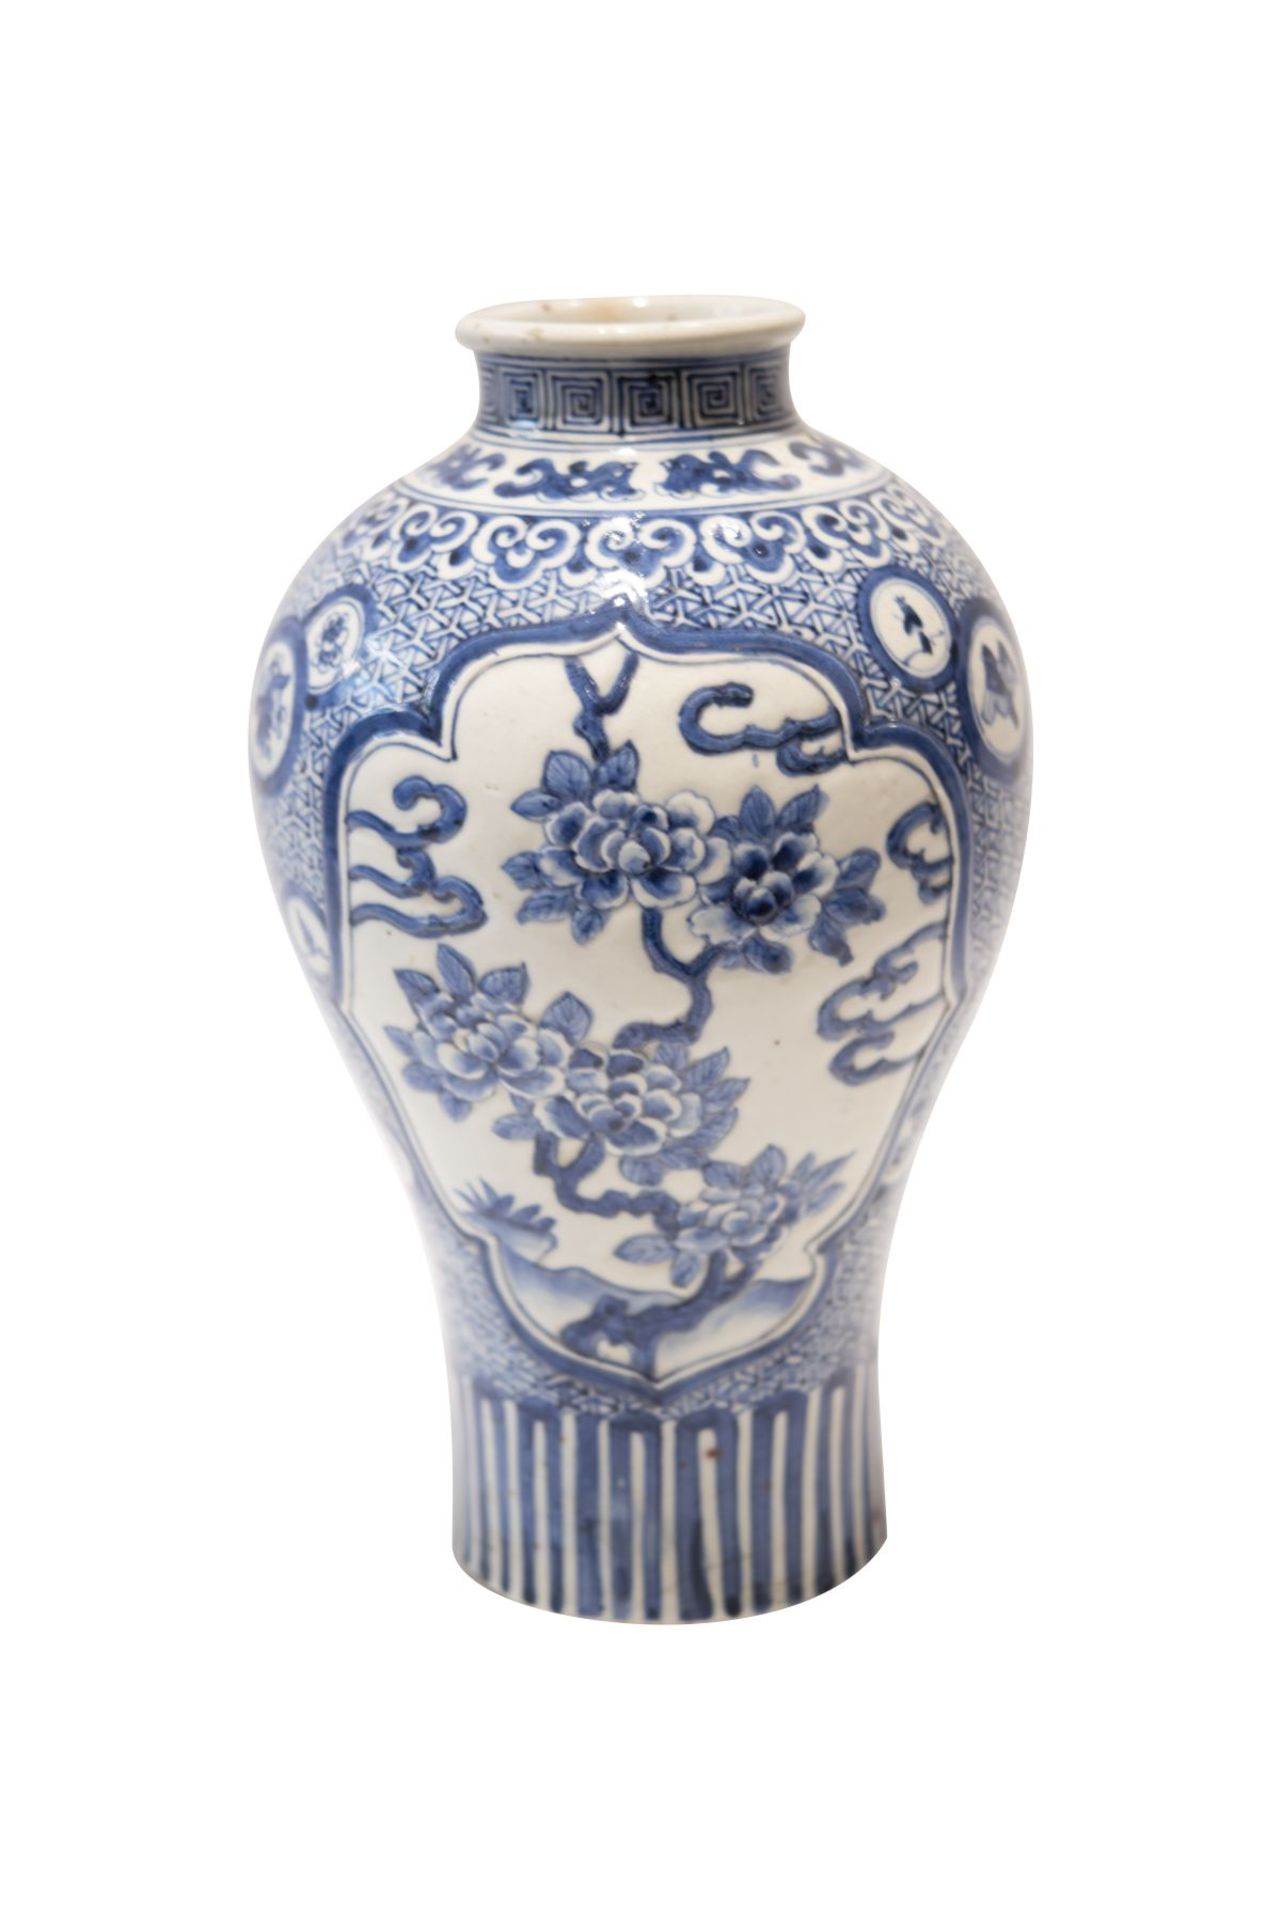 Blau-weisse VaseBlau-weise Vase, bauchige Form nach schmal auslaufend, reich bemalt mit Vögeln und - Image 2 of 3